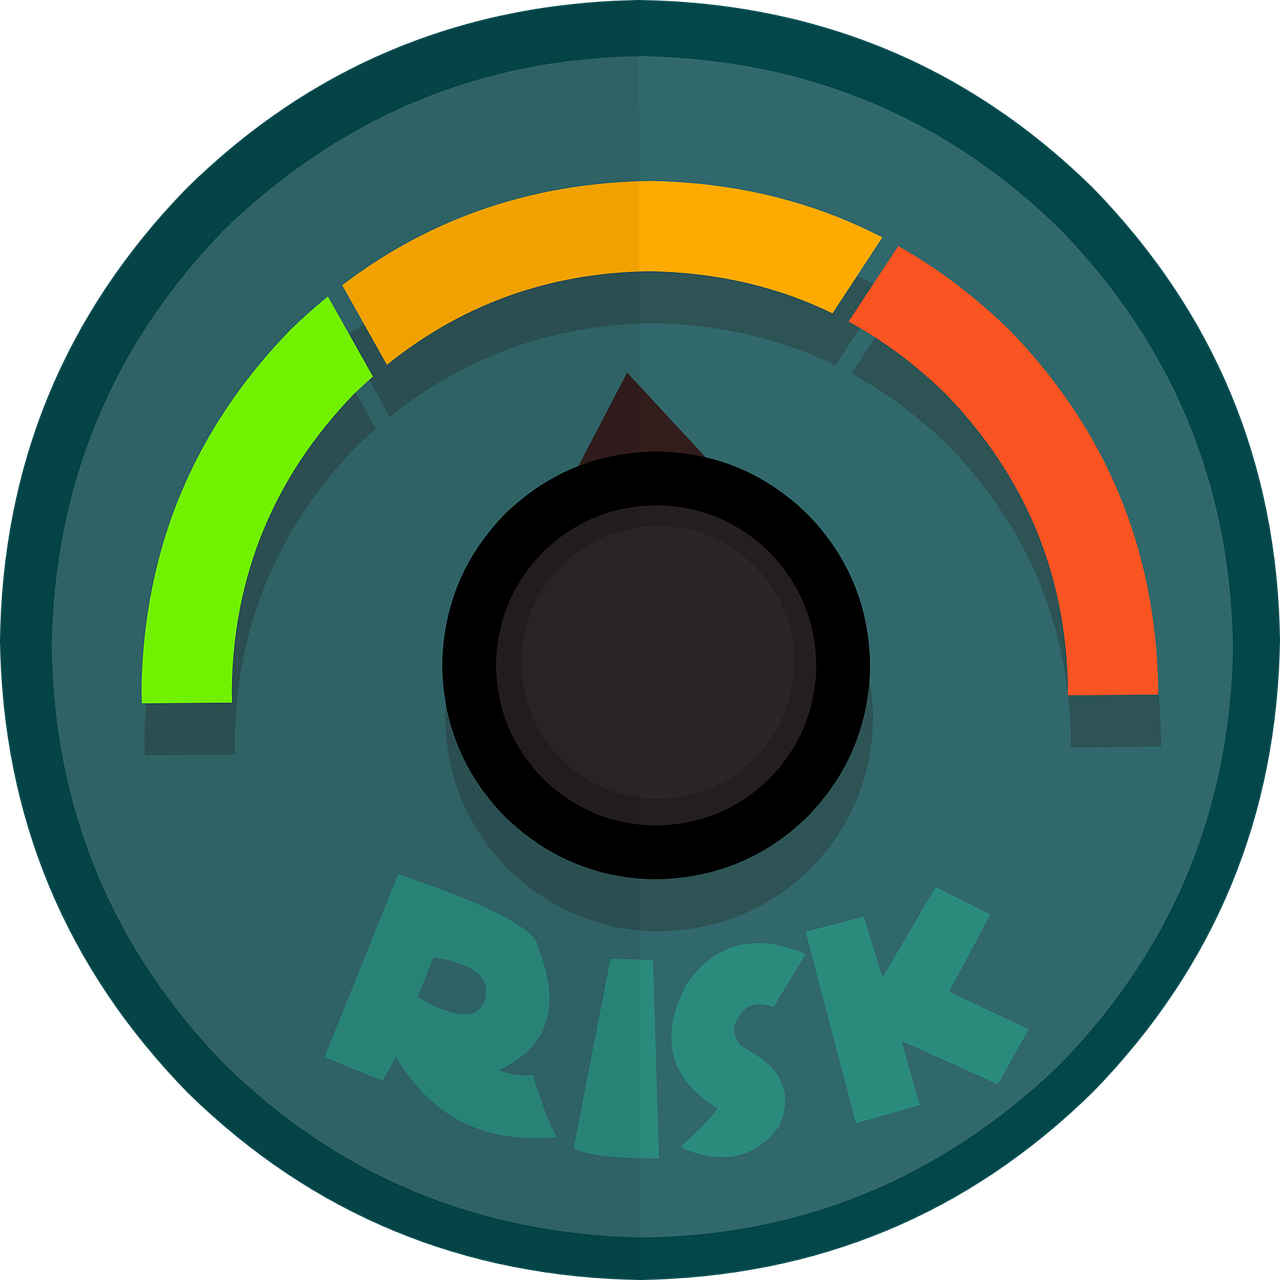 Grafik von einem Messgerät mit der Aufschrift Risk